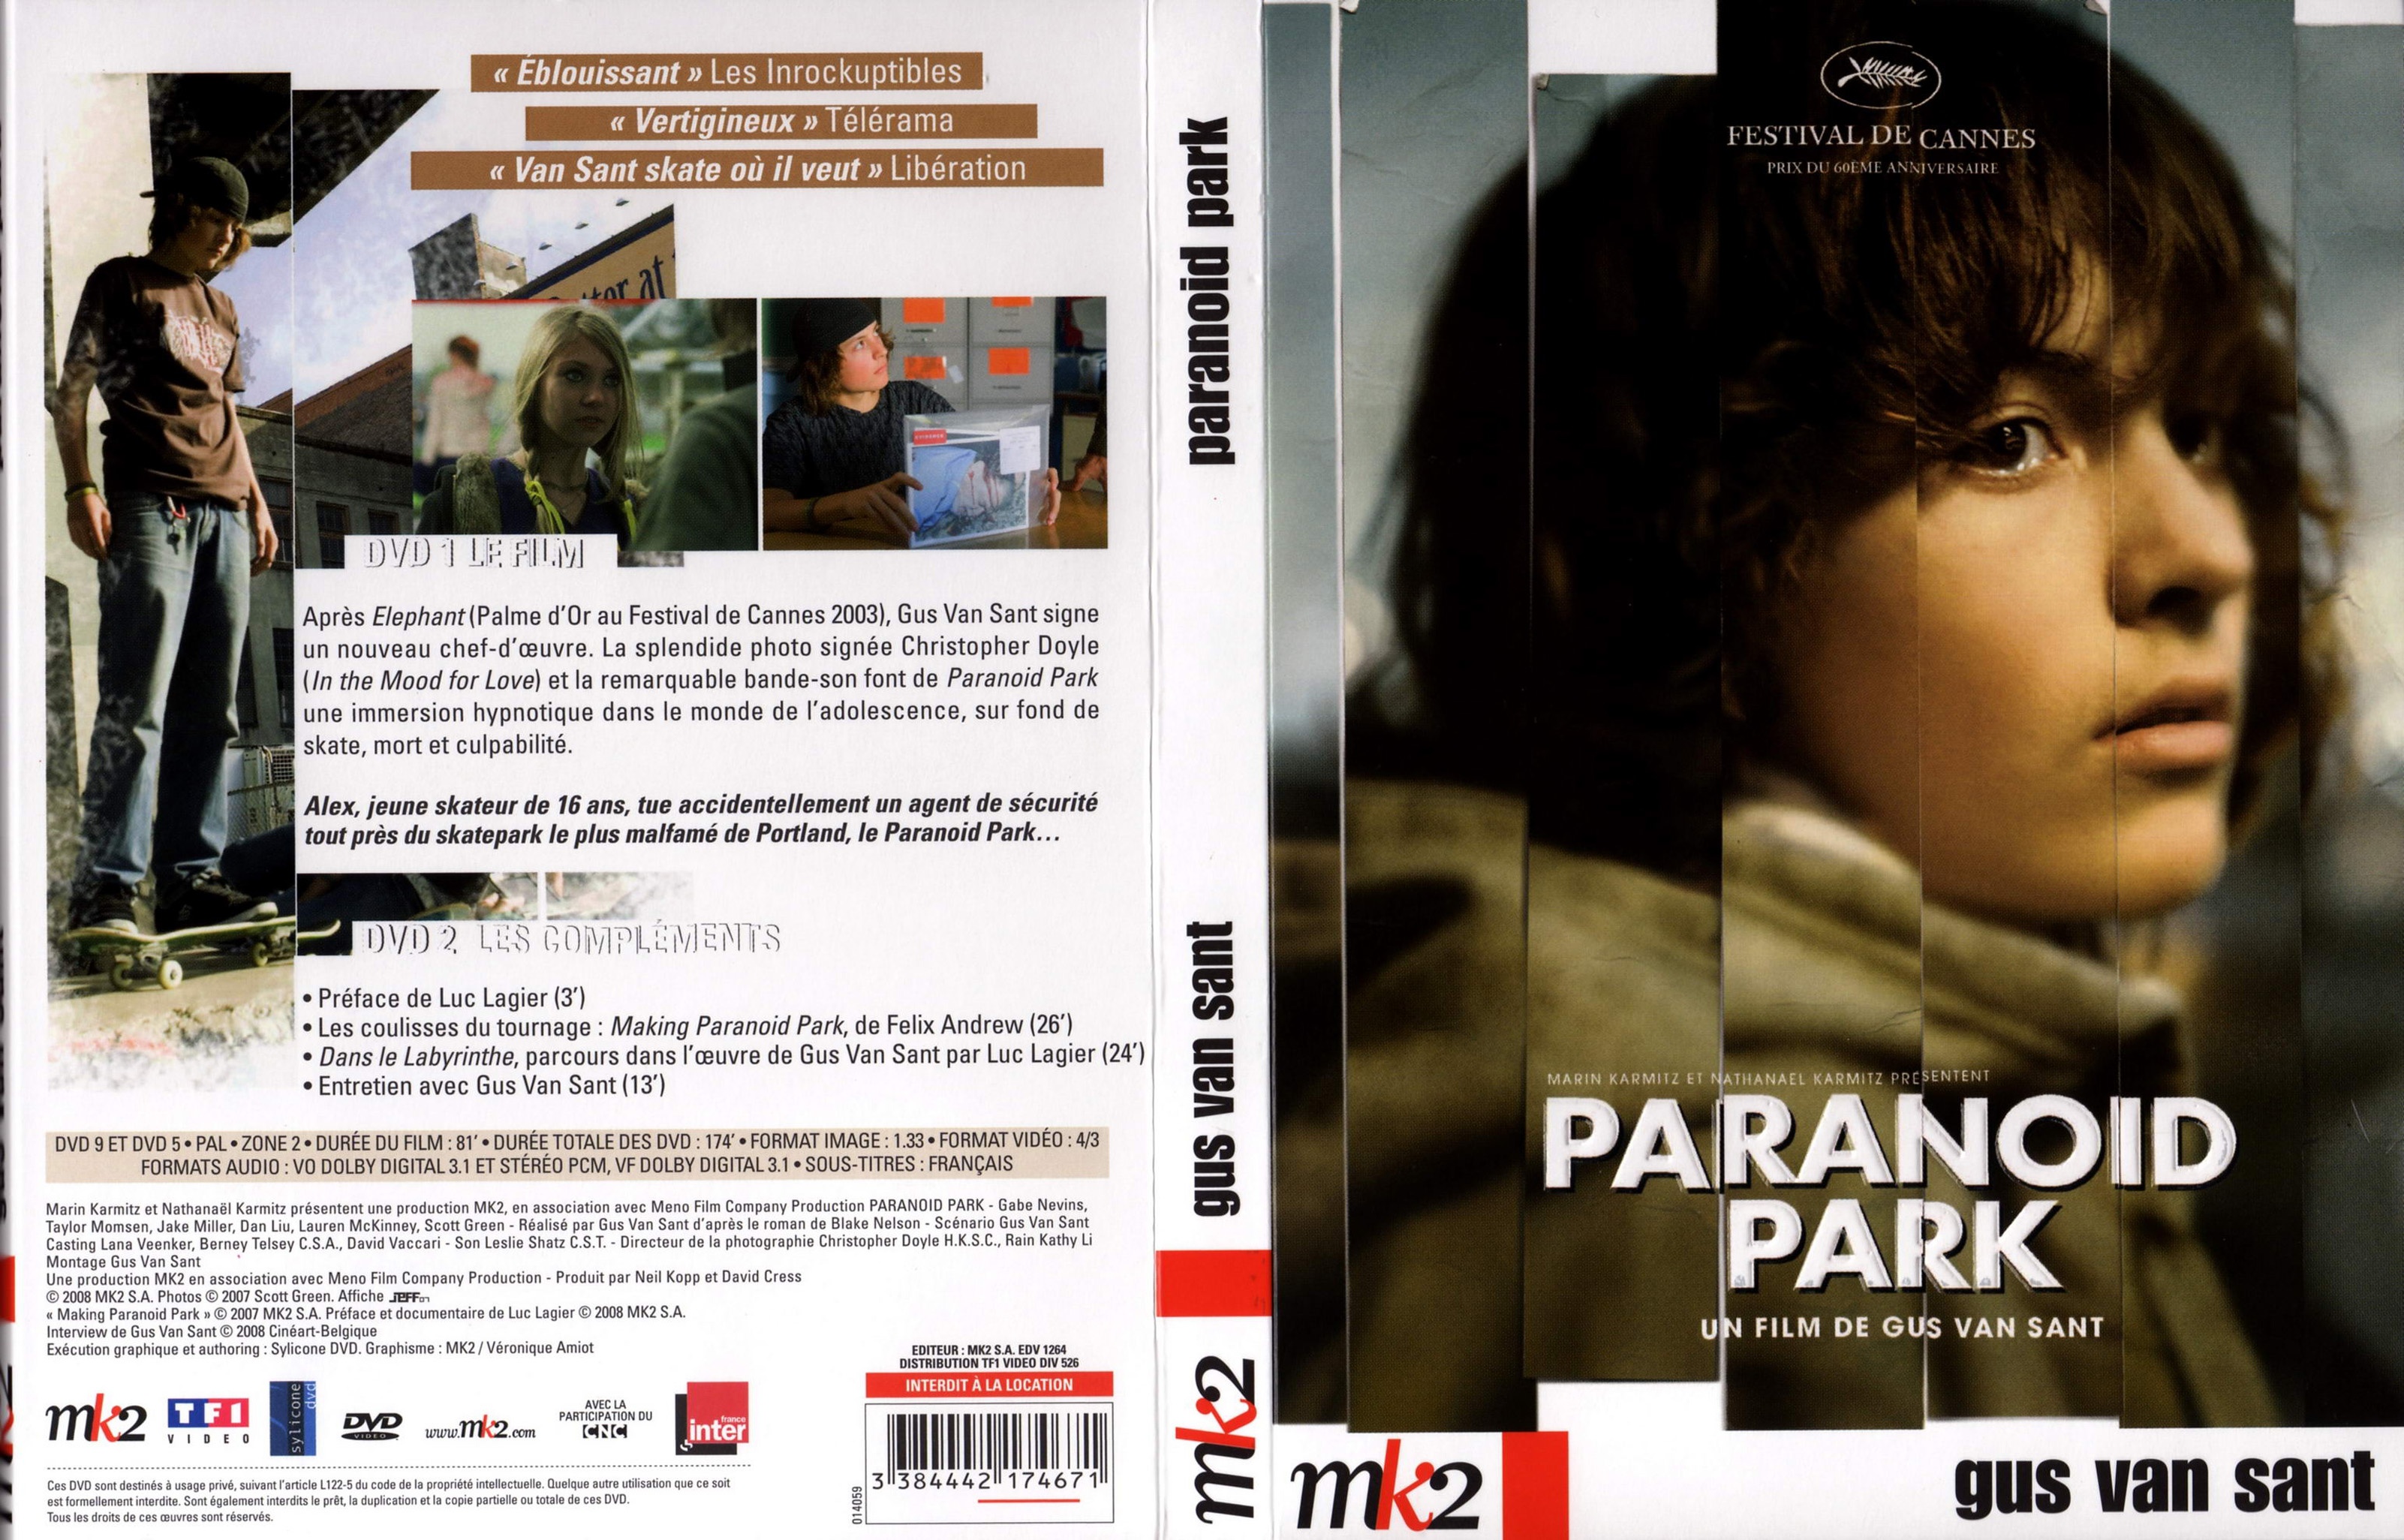 Jaquette DVD Paranoid park v2